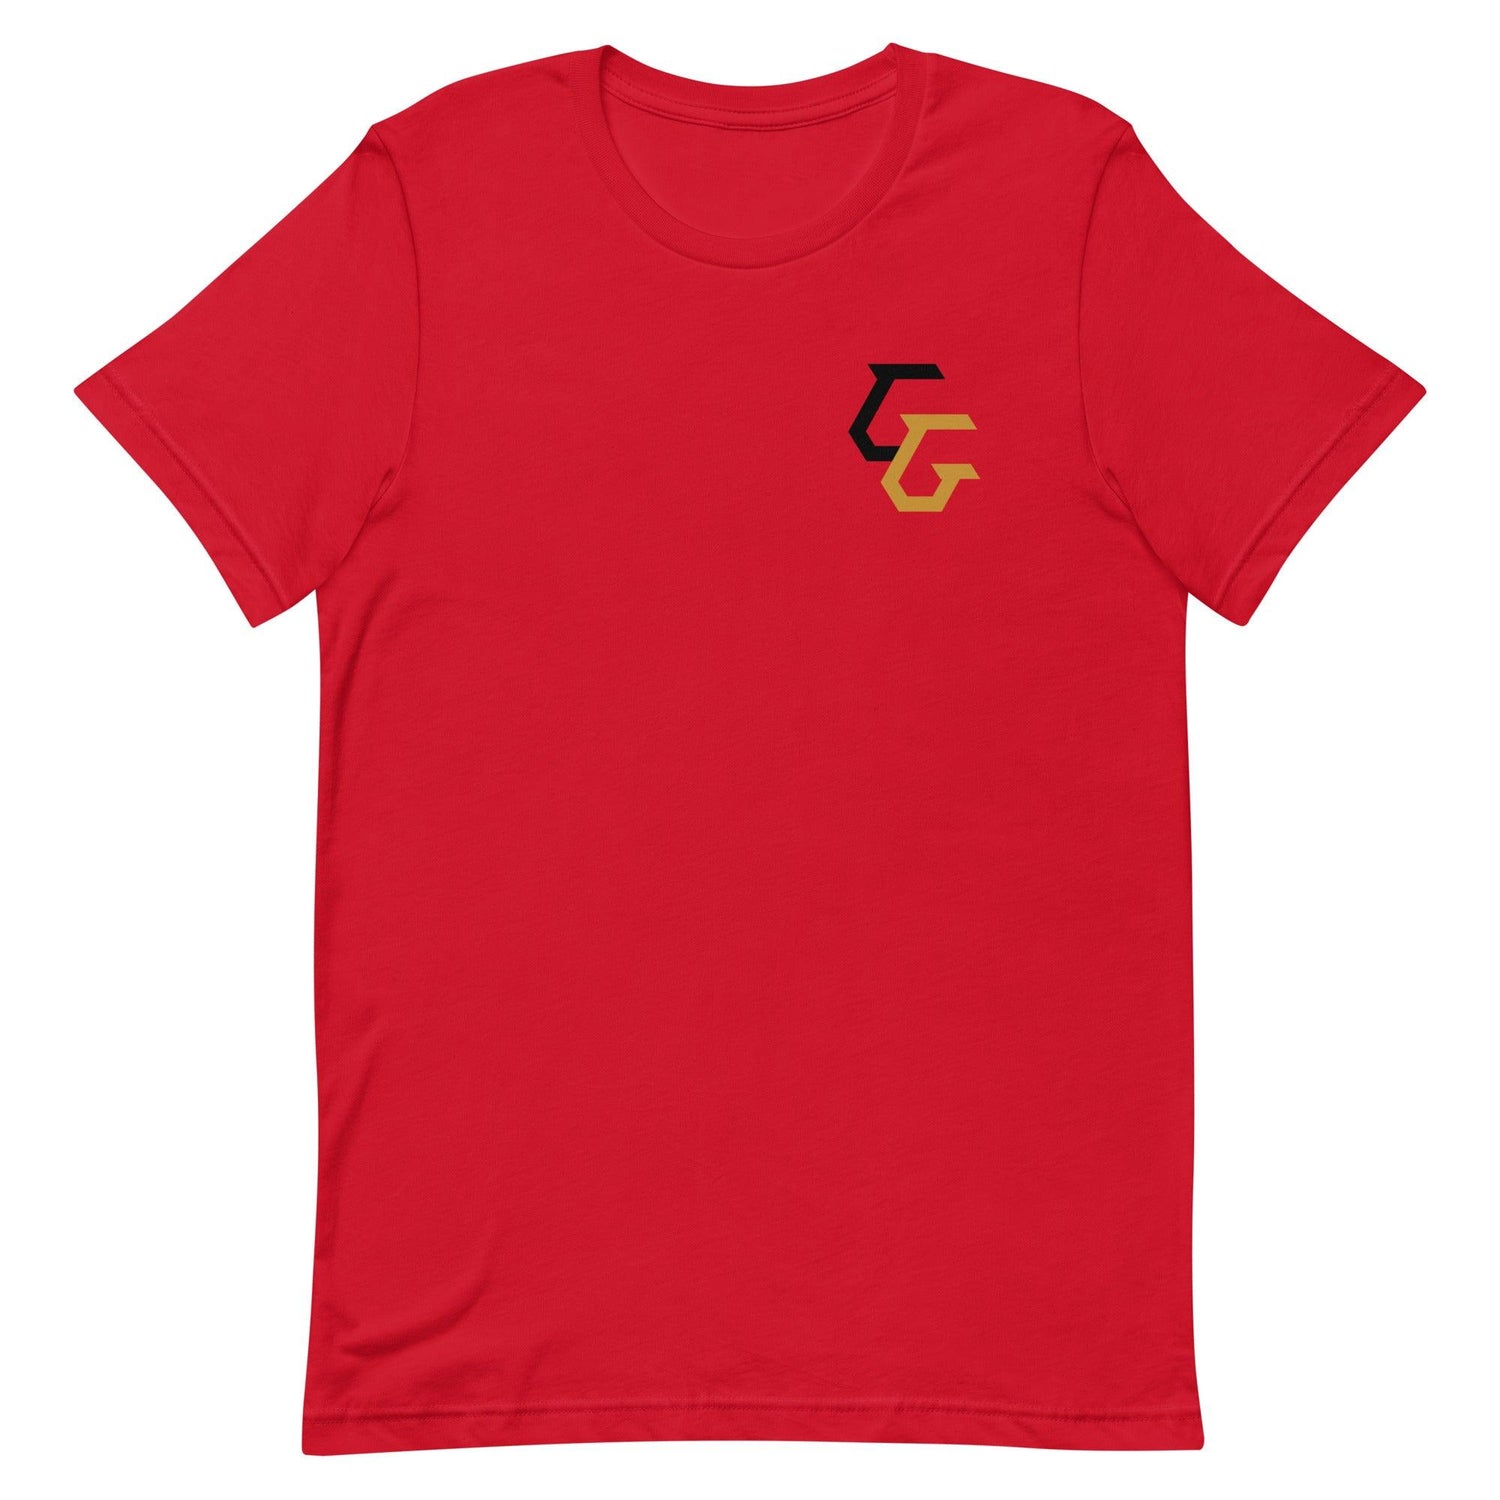 Gunnar Gottula "Essential" t-shirt - Fan Arch